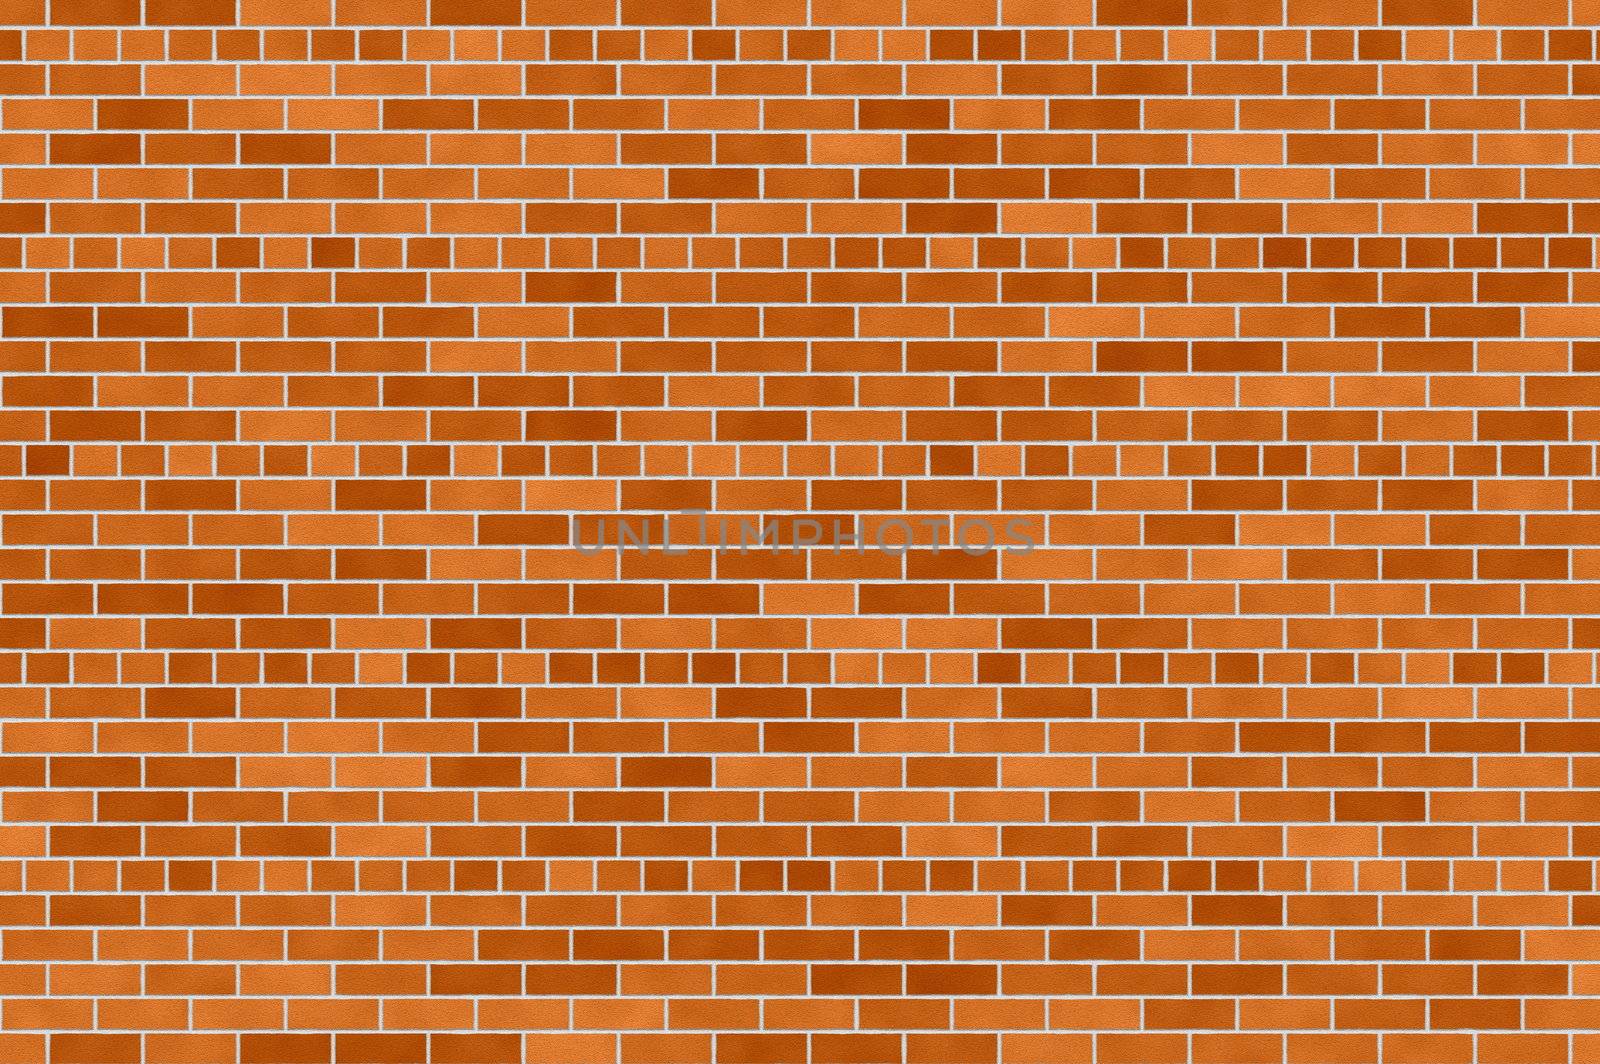 Brick wall by rusak